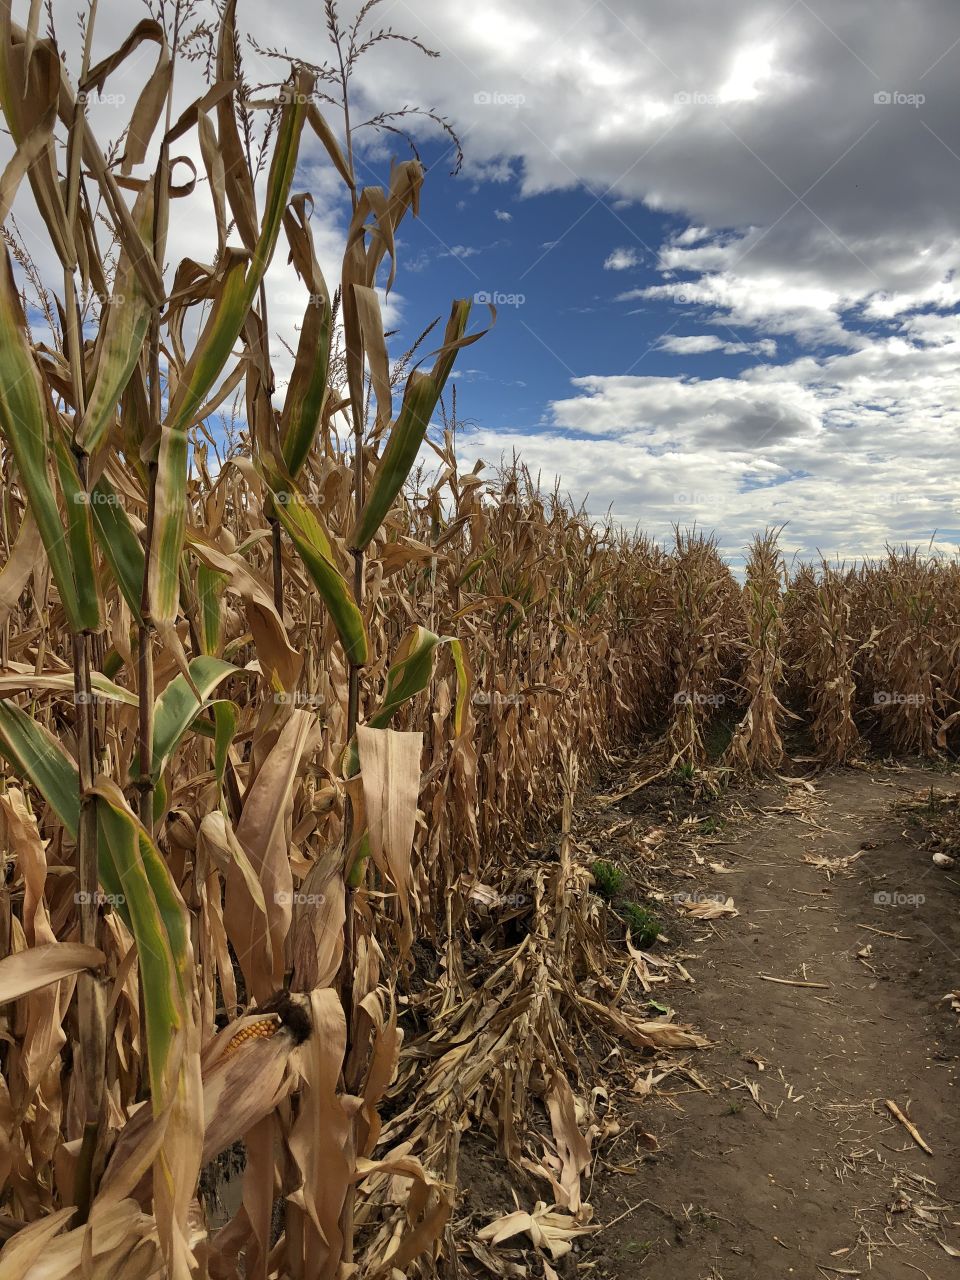 Colorado corn maze